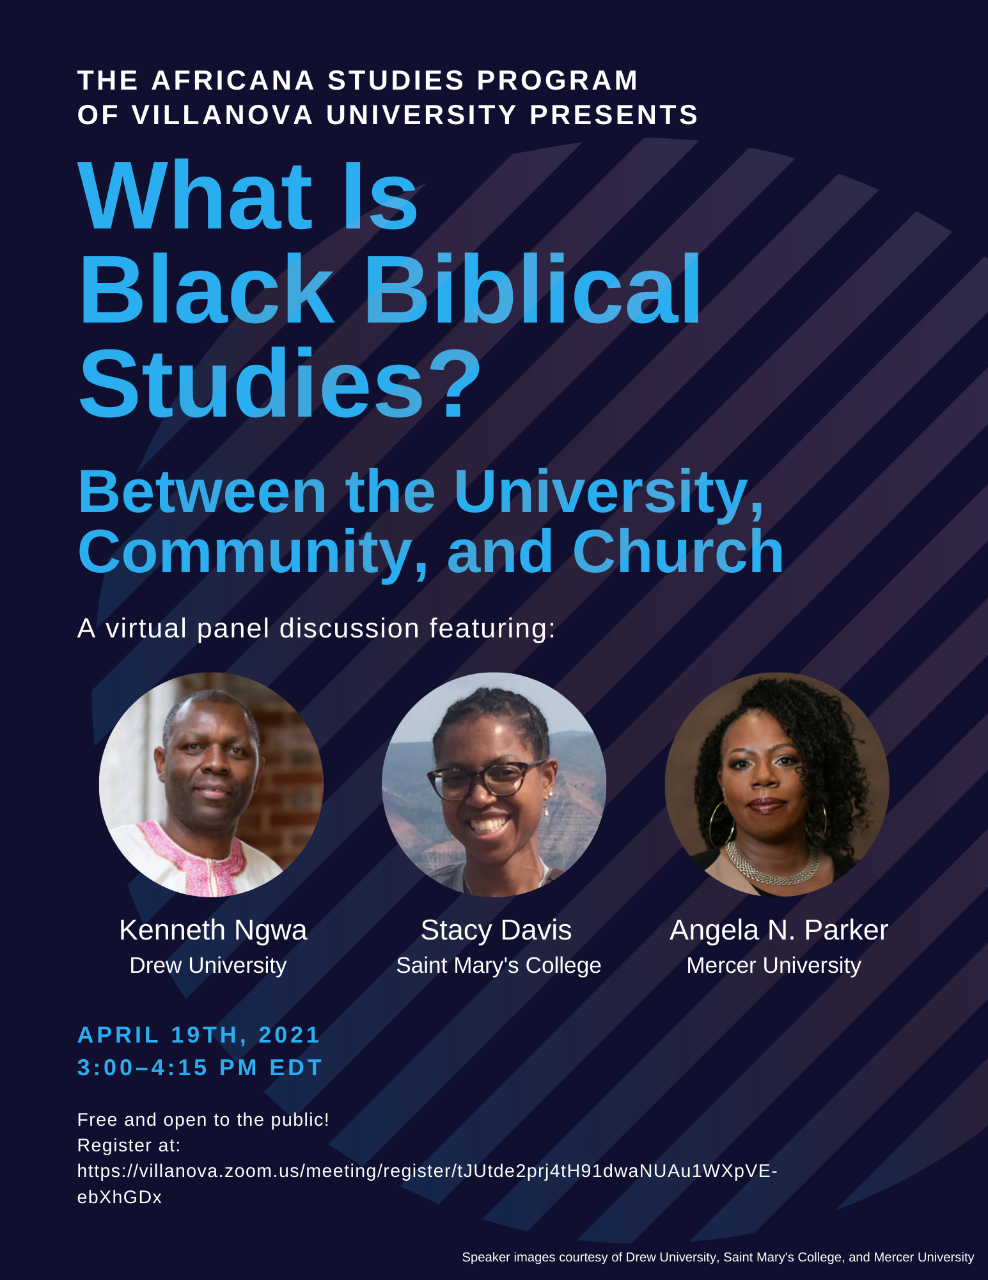 What is Black Biblical Studies?